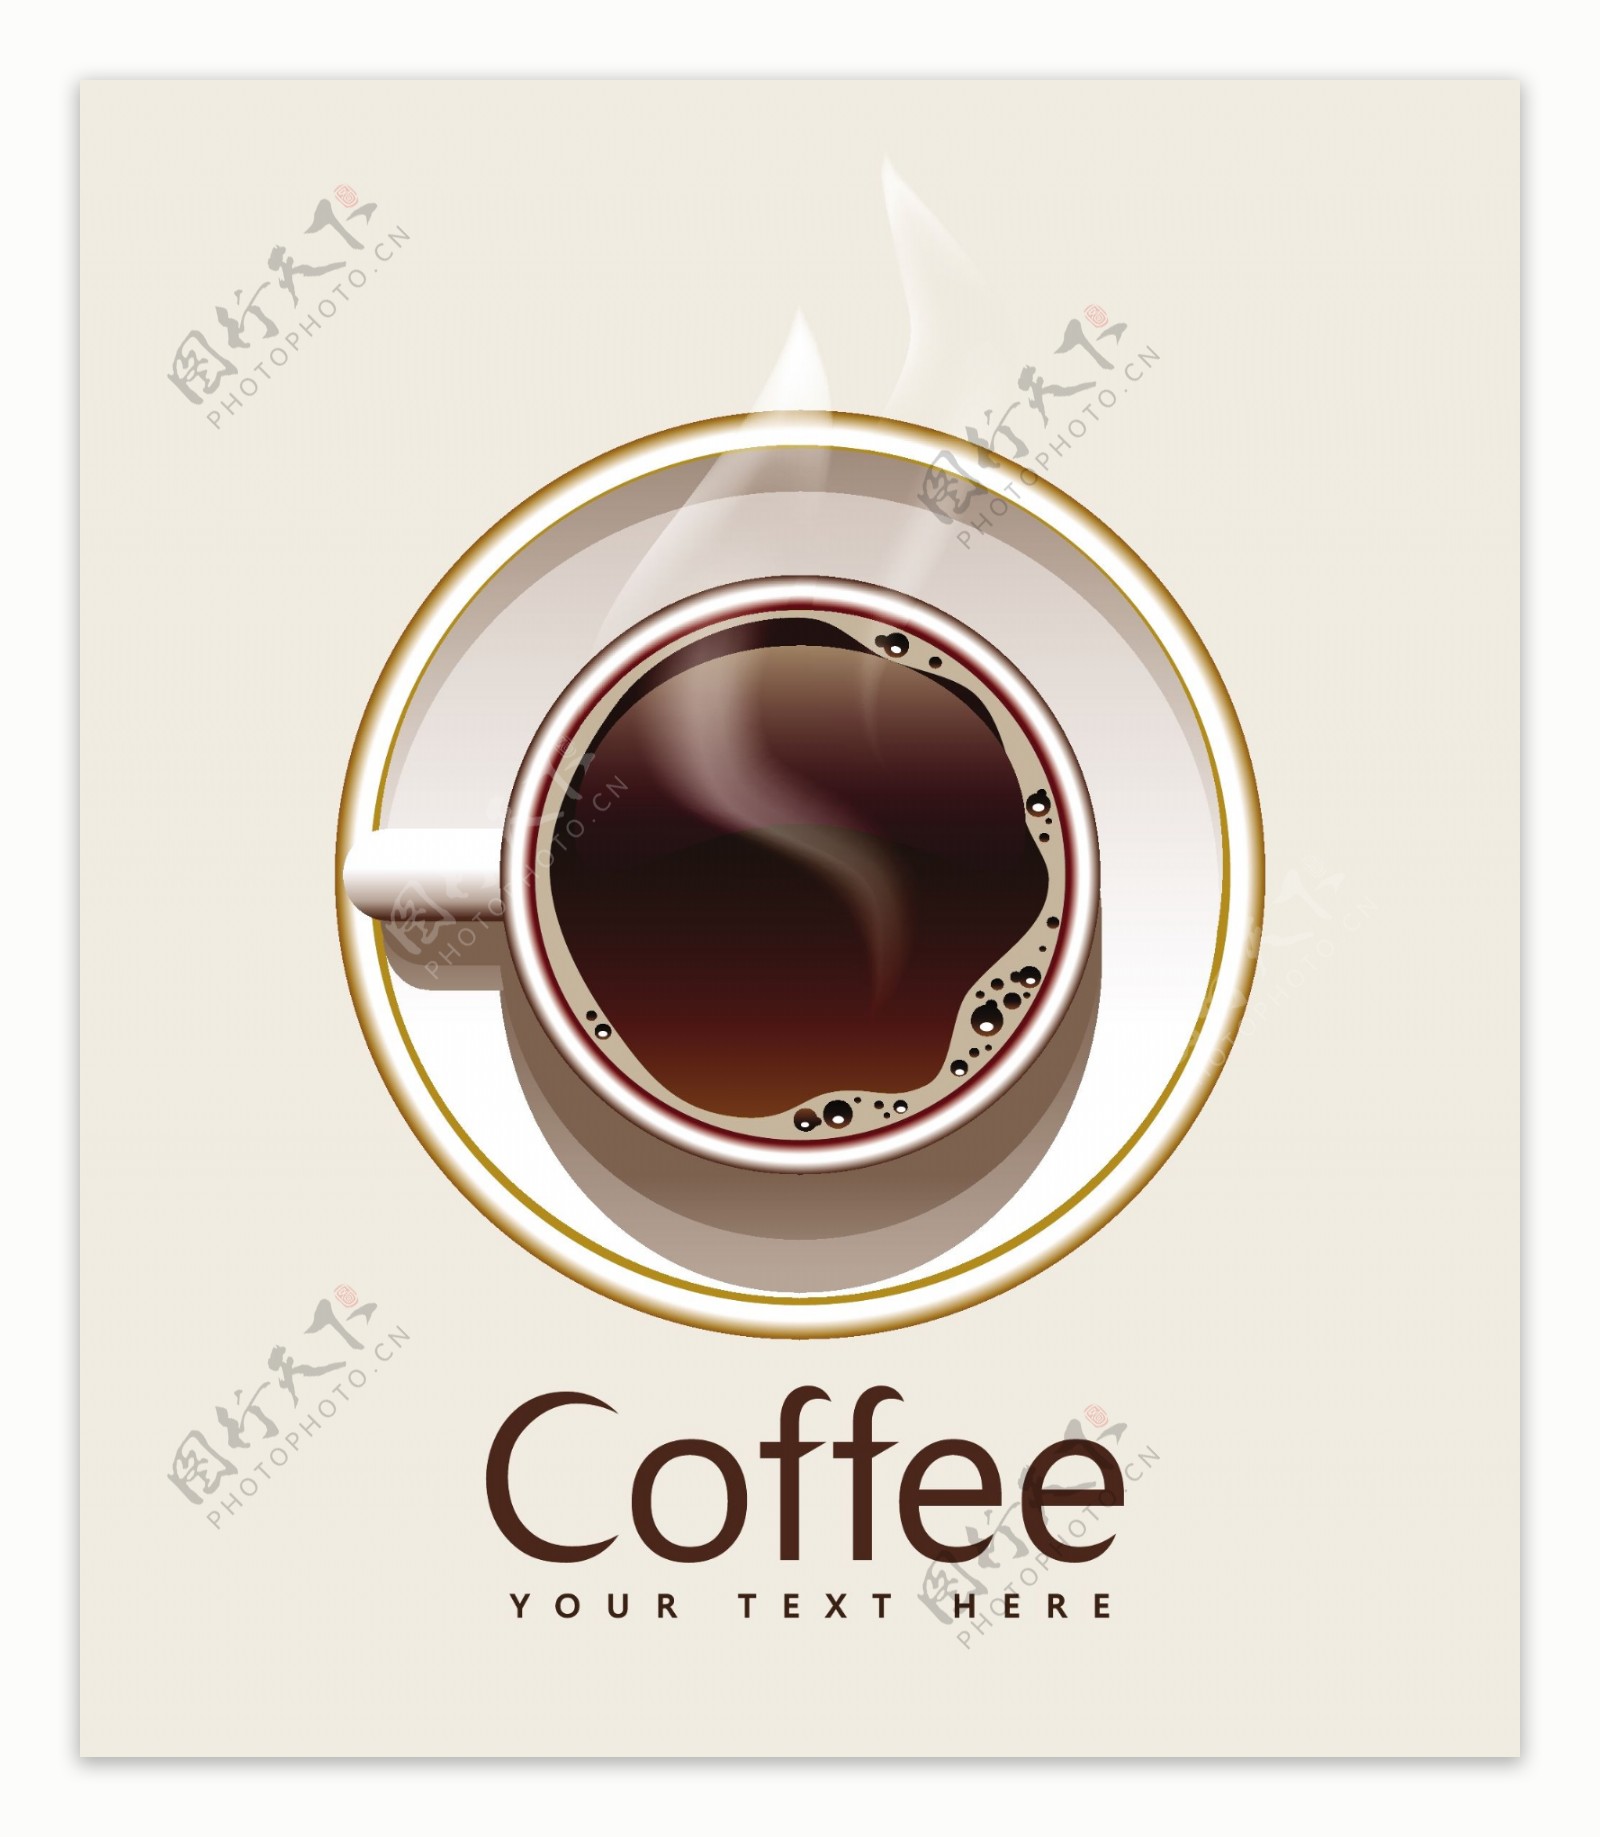 美味咖啡背景图